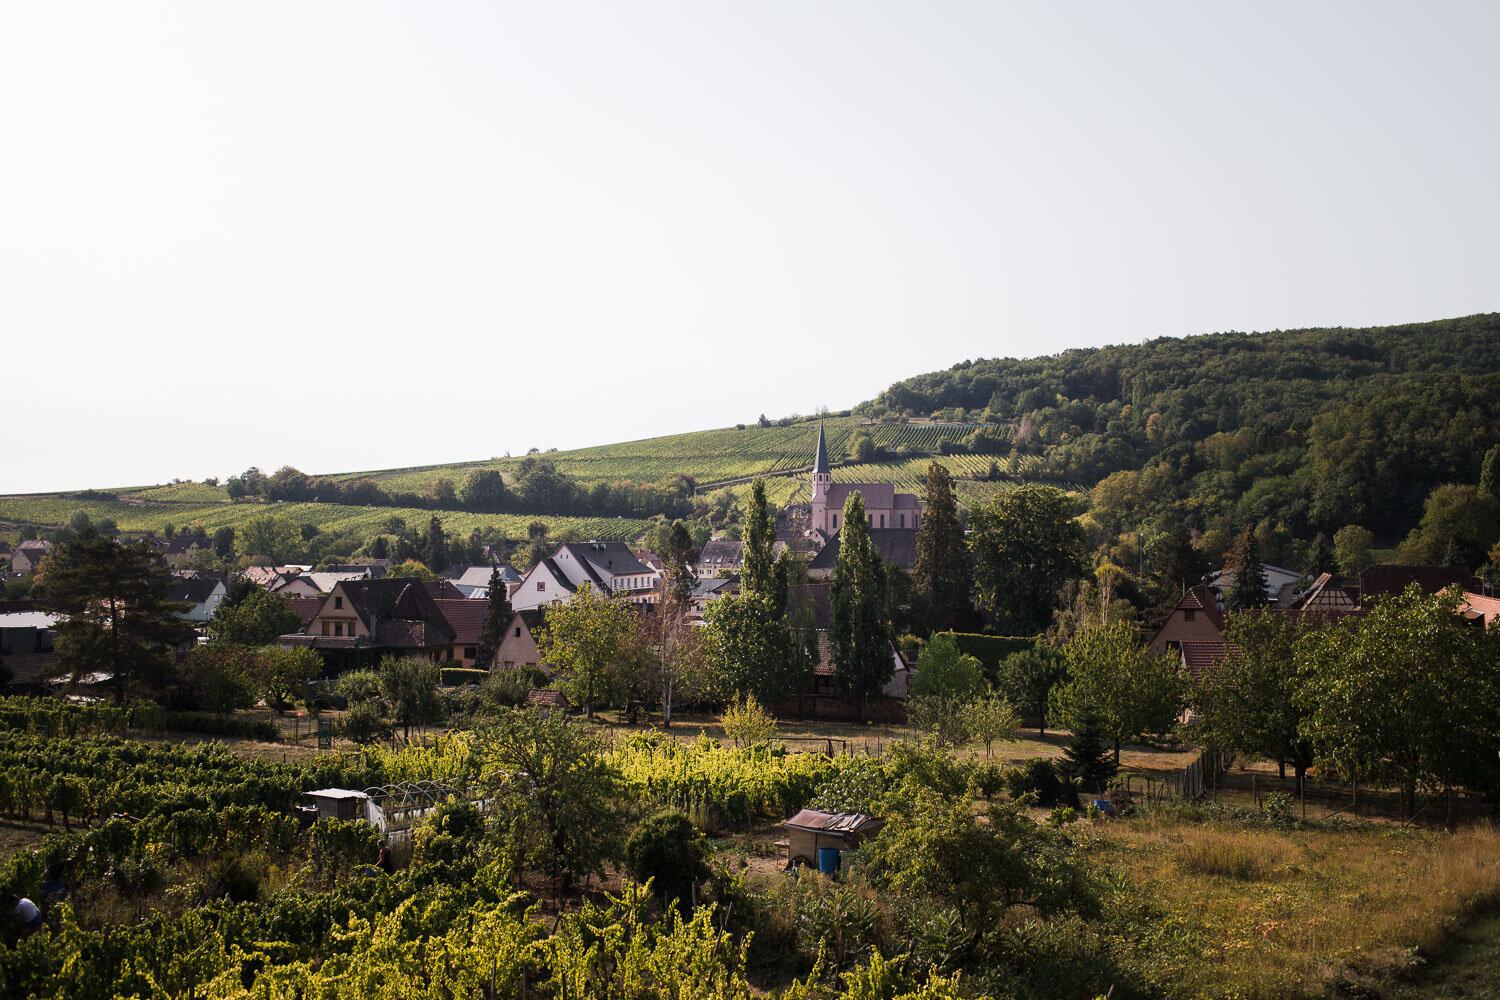 Mariage laïque et champêtre en Alsace